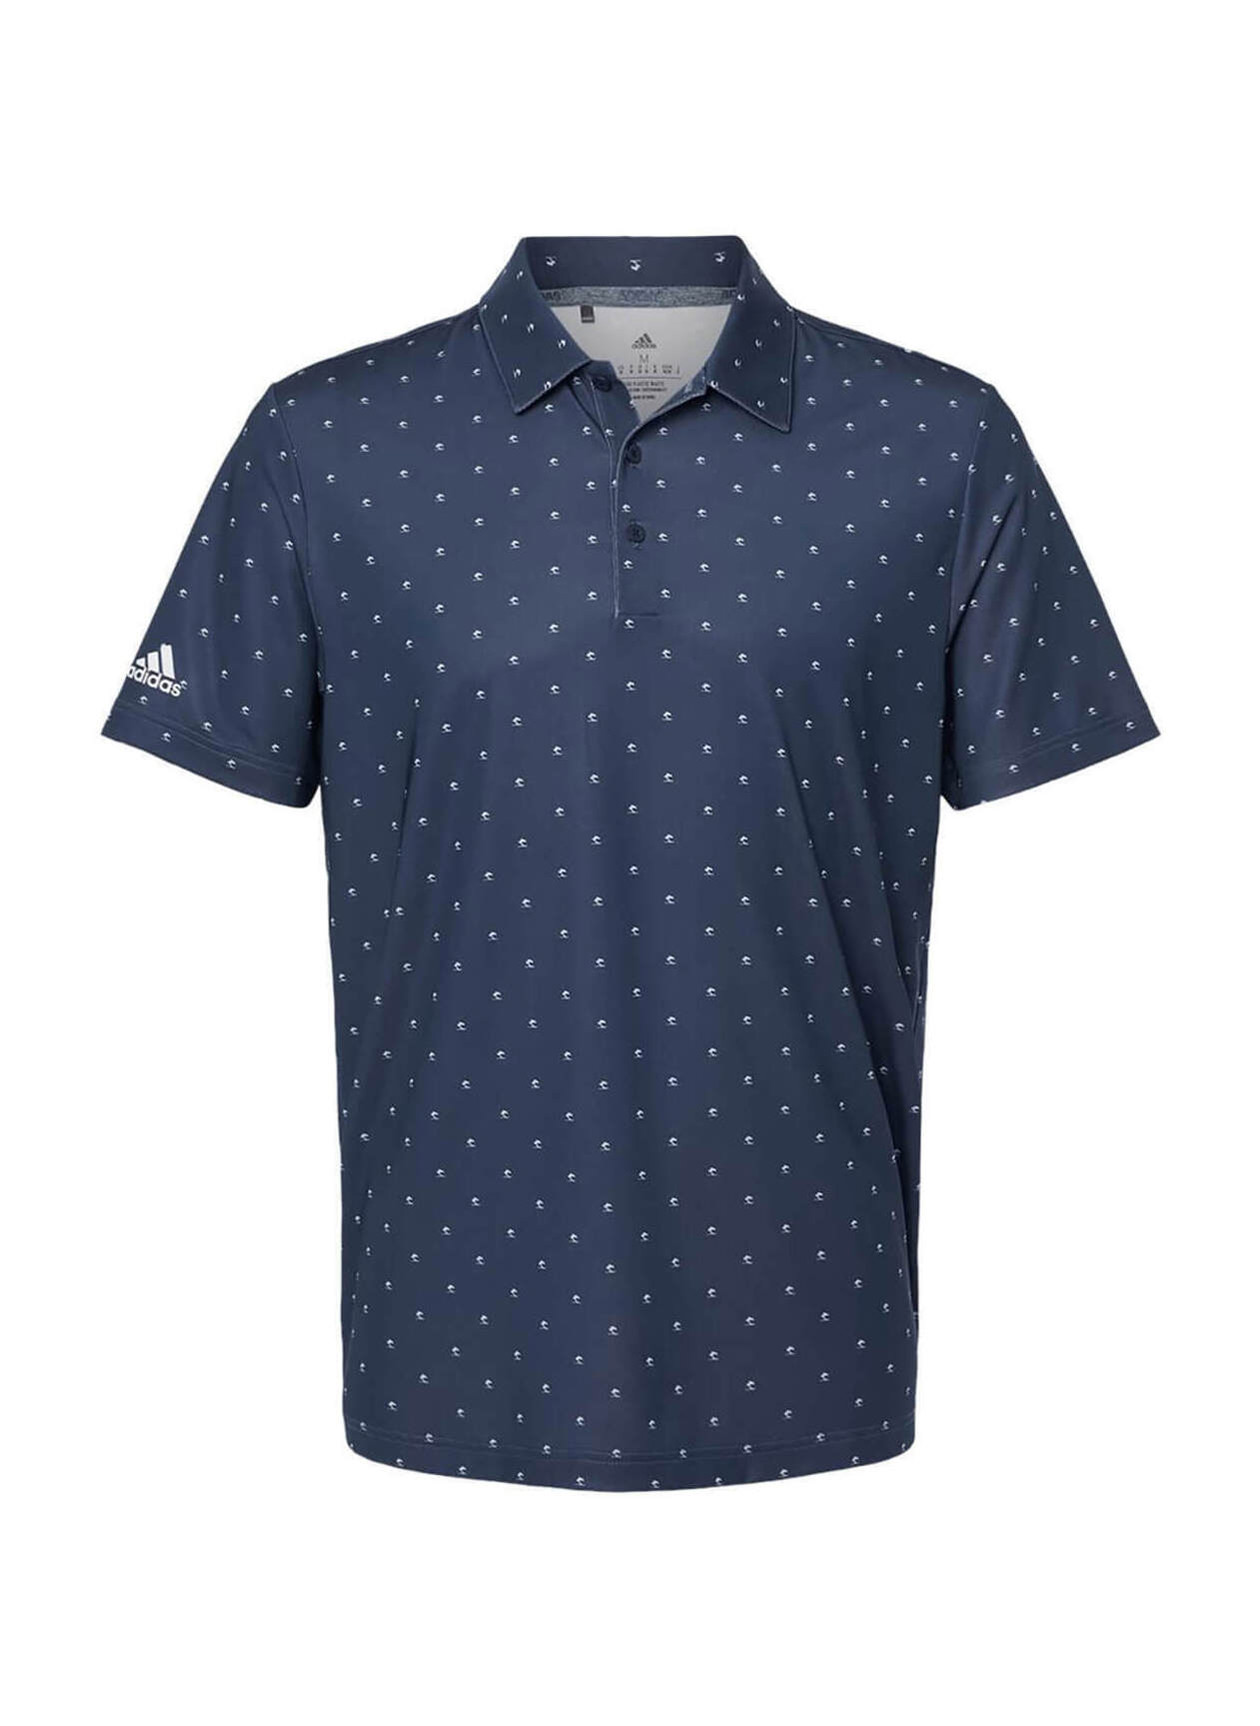 Adidas Men's Collegiate Navy-White Pine Tree Polo | Customized Polo Shirts